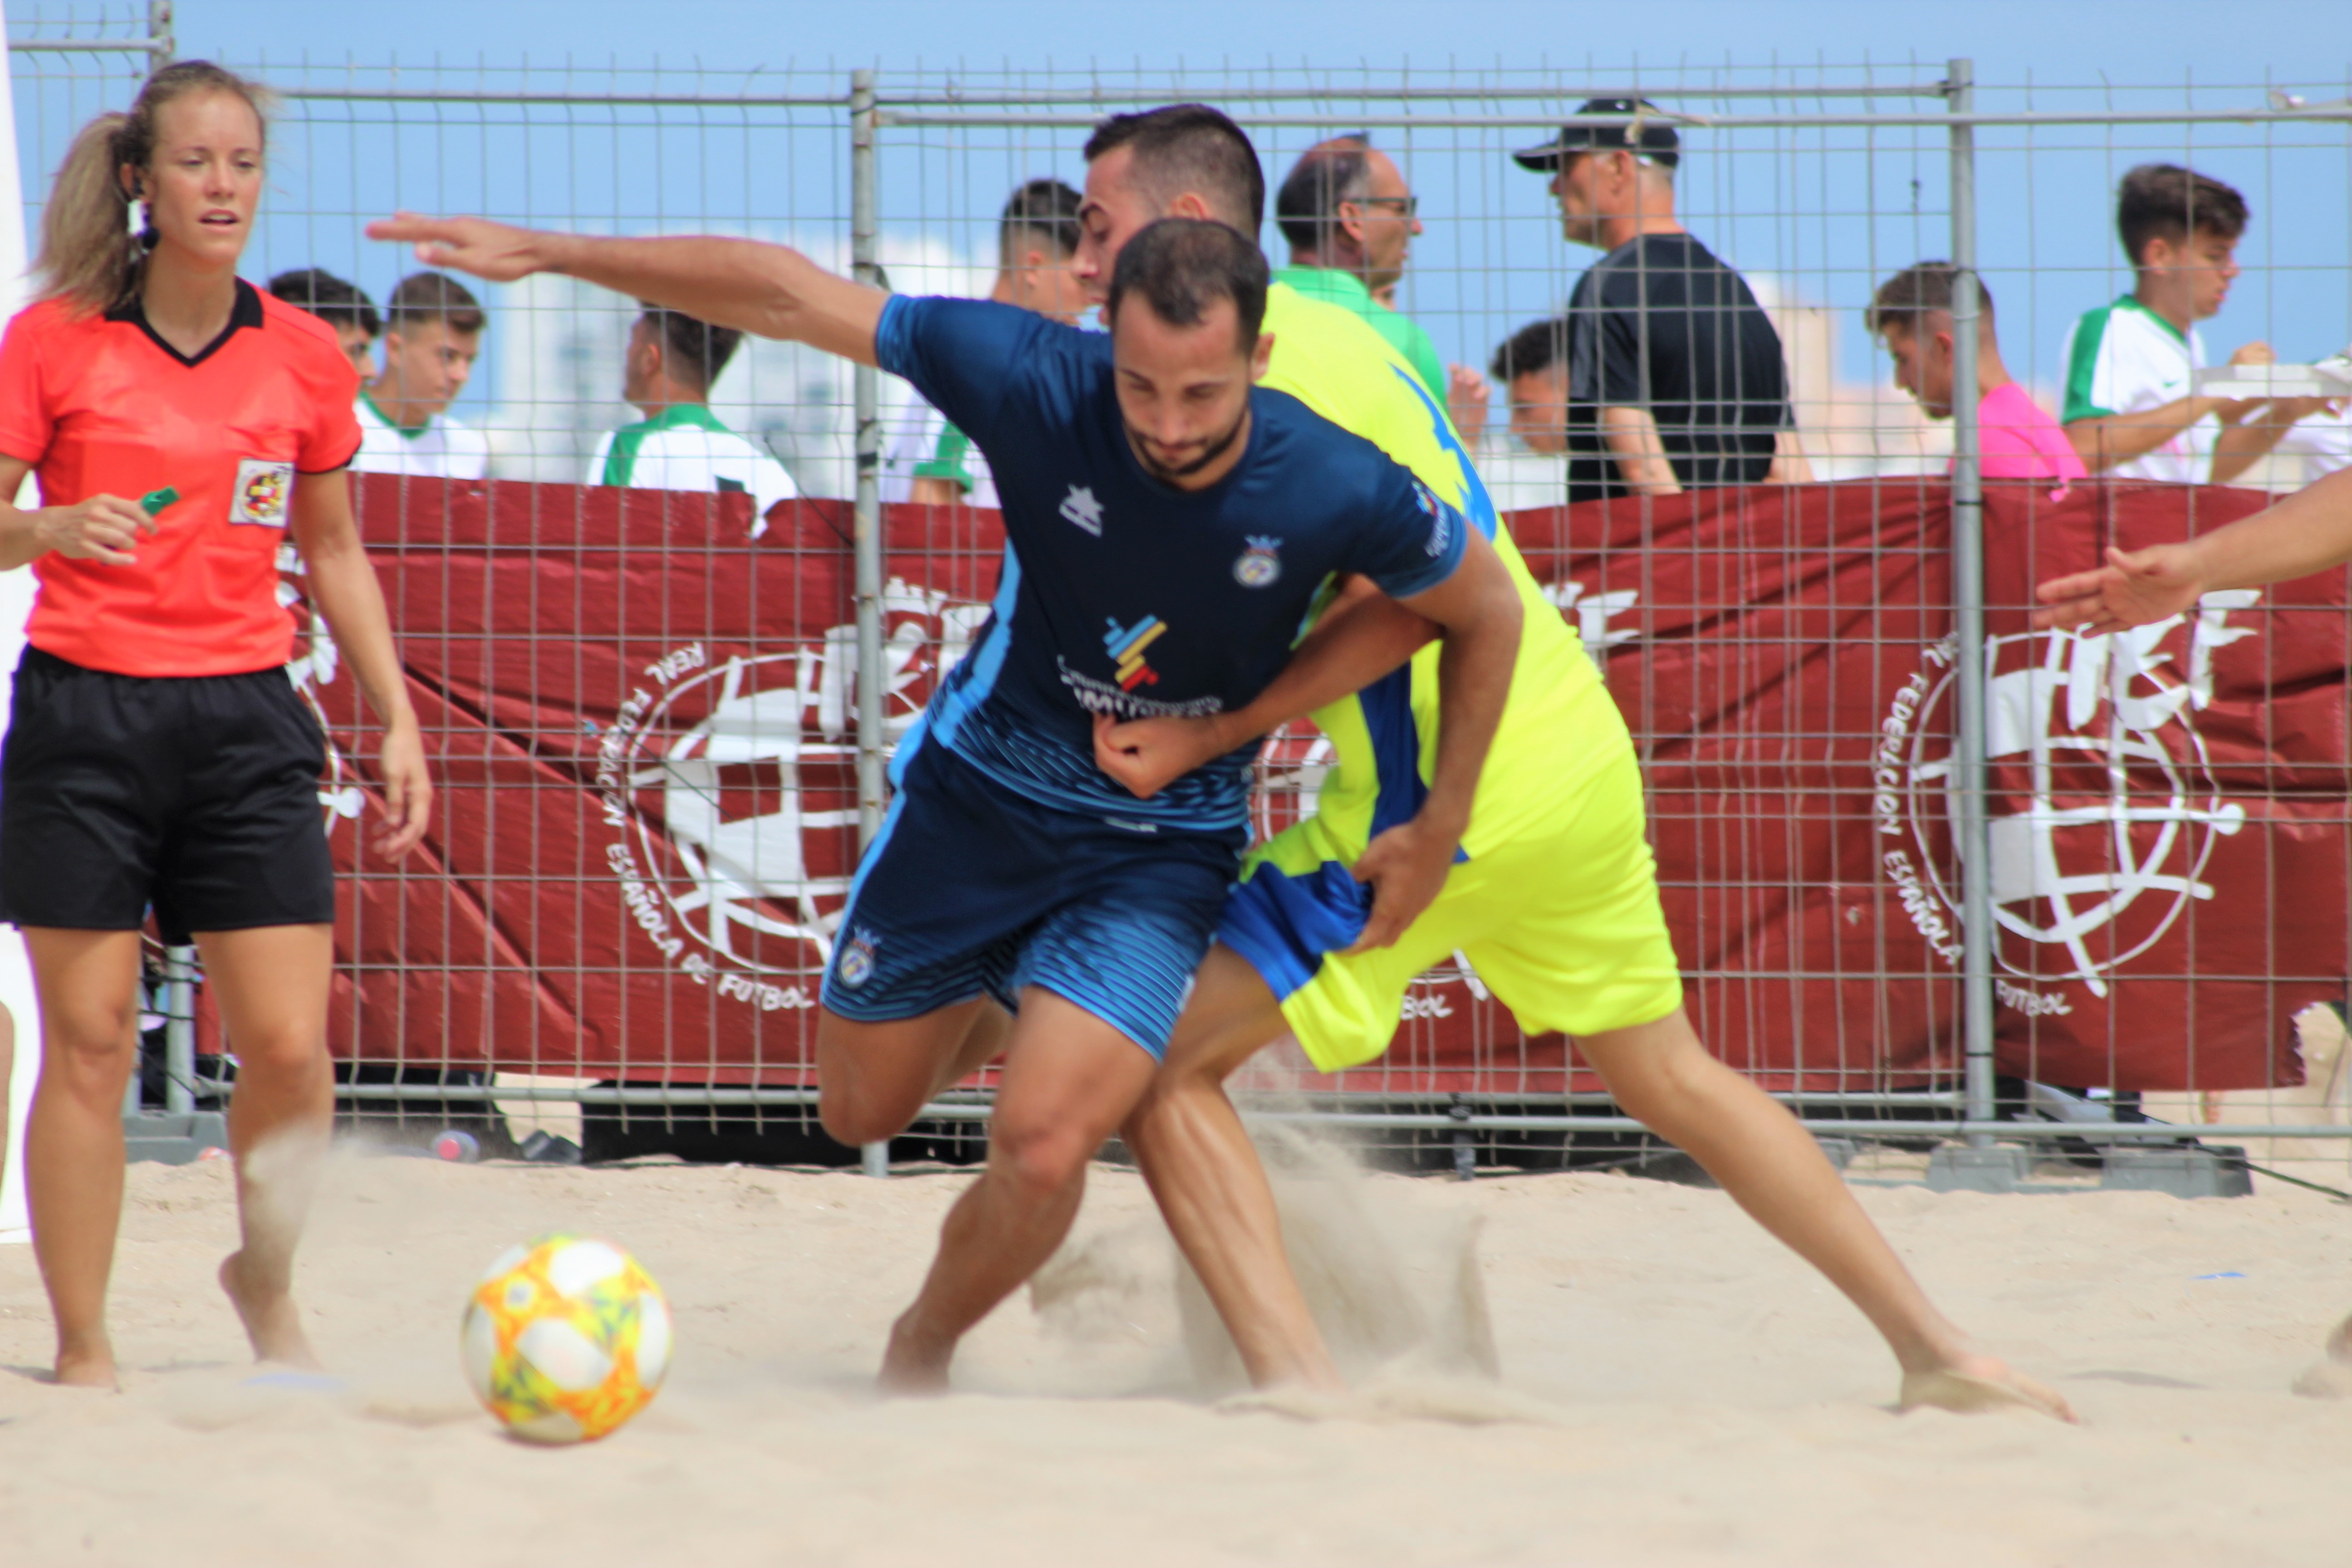 28 julio- Campeonato Nacional Absoluto Fútbol Playa Selecció Valenciana